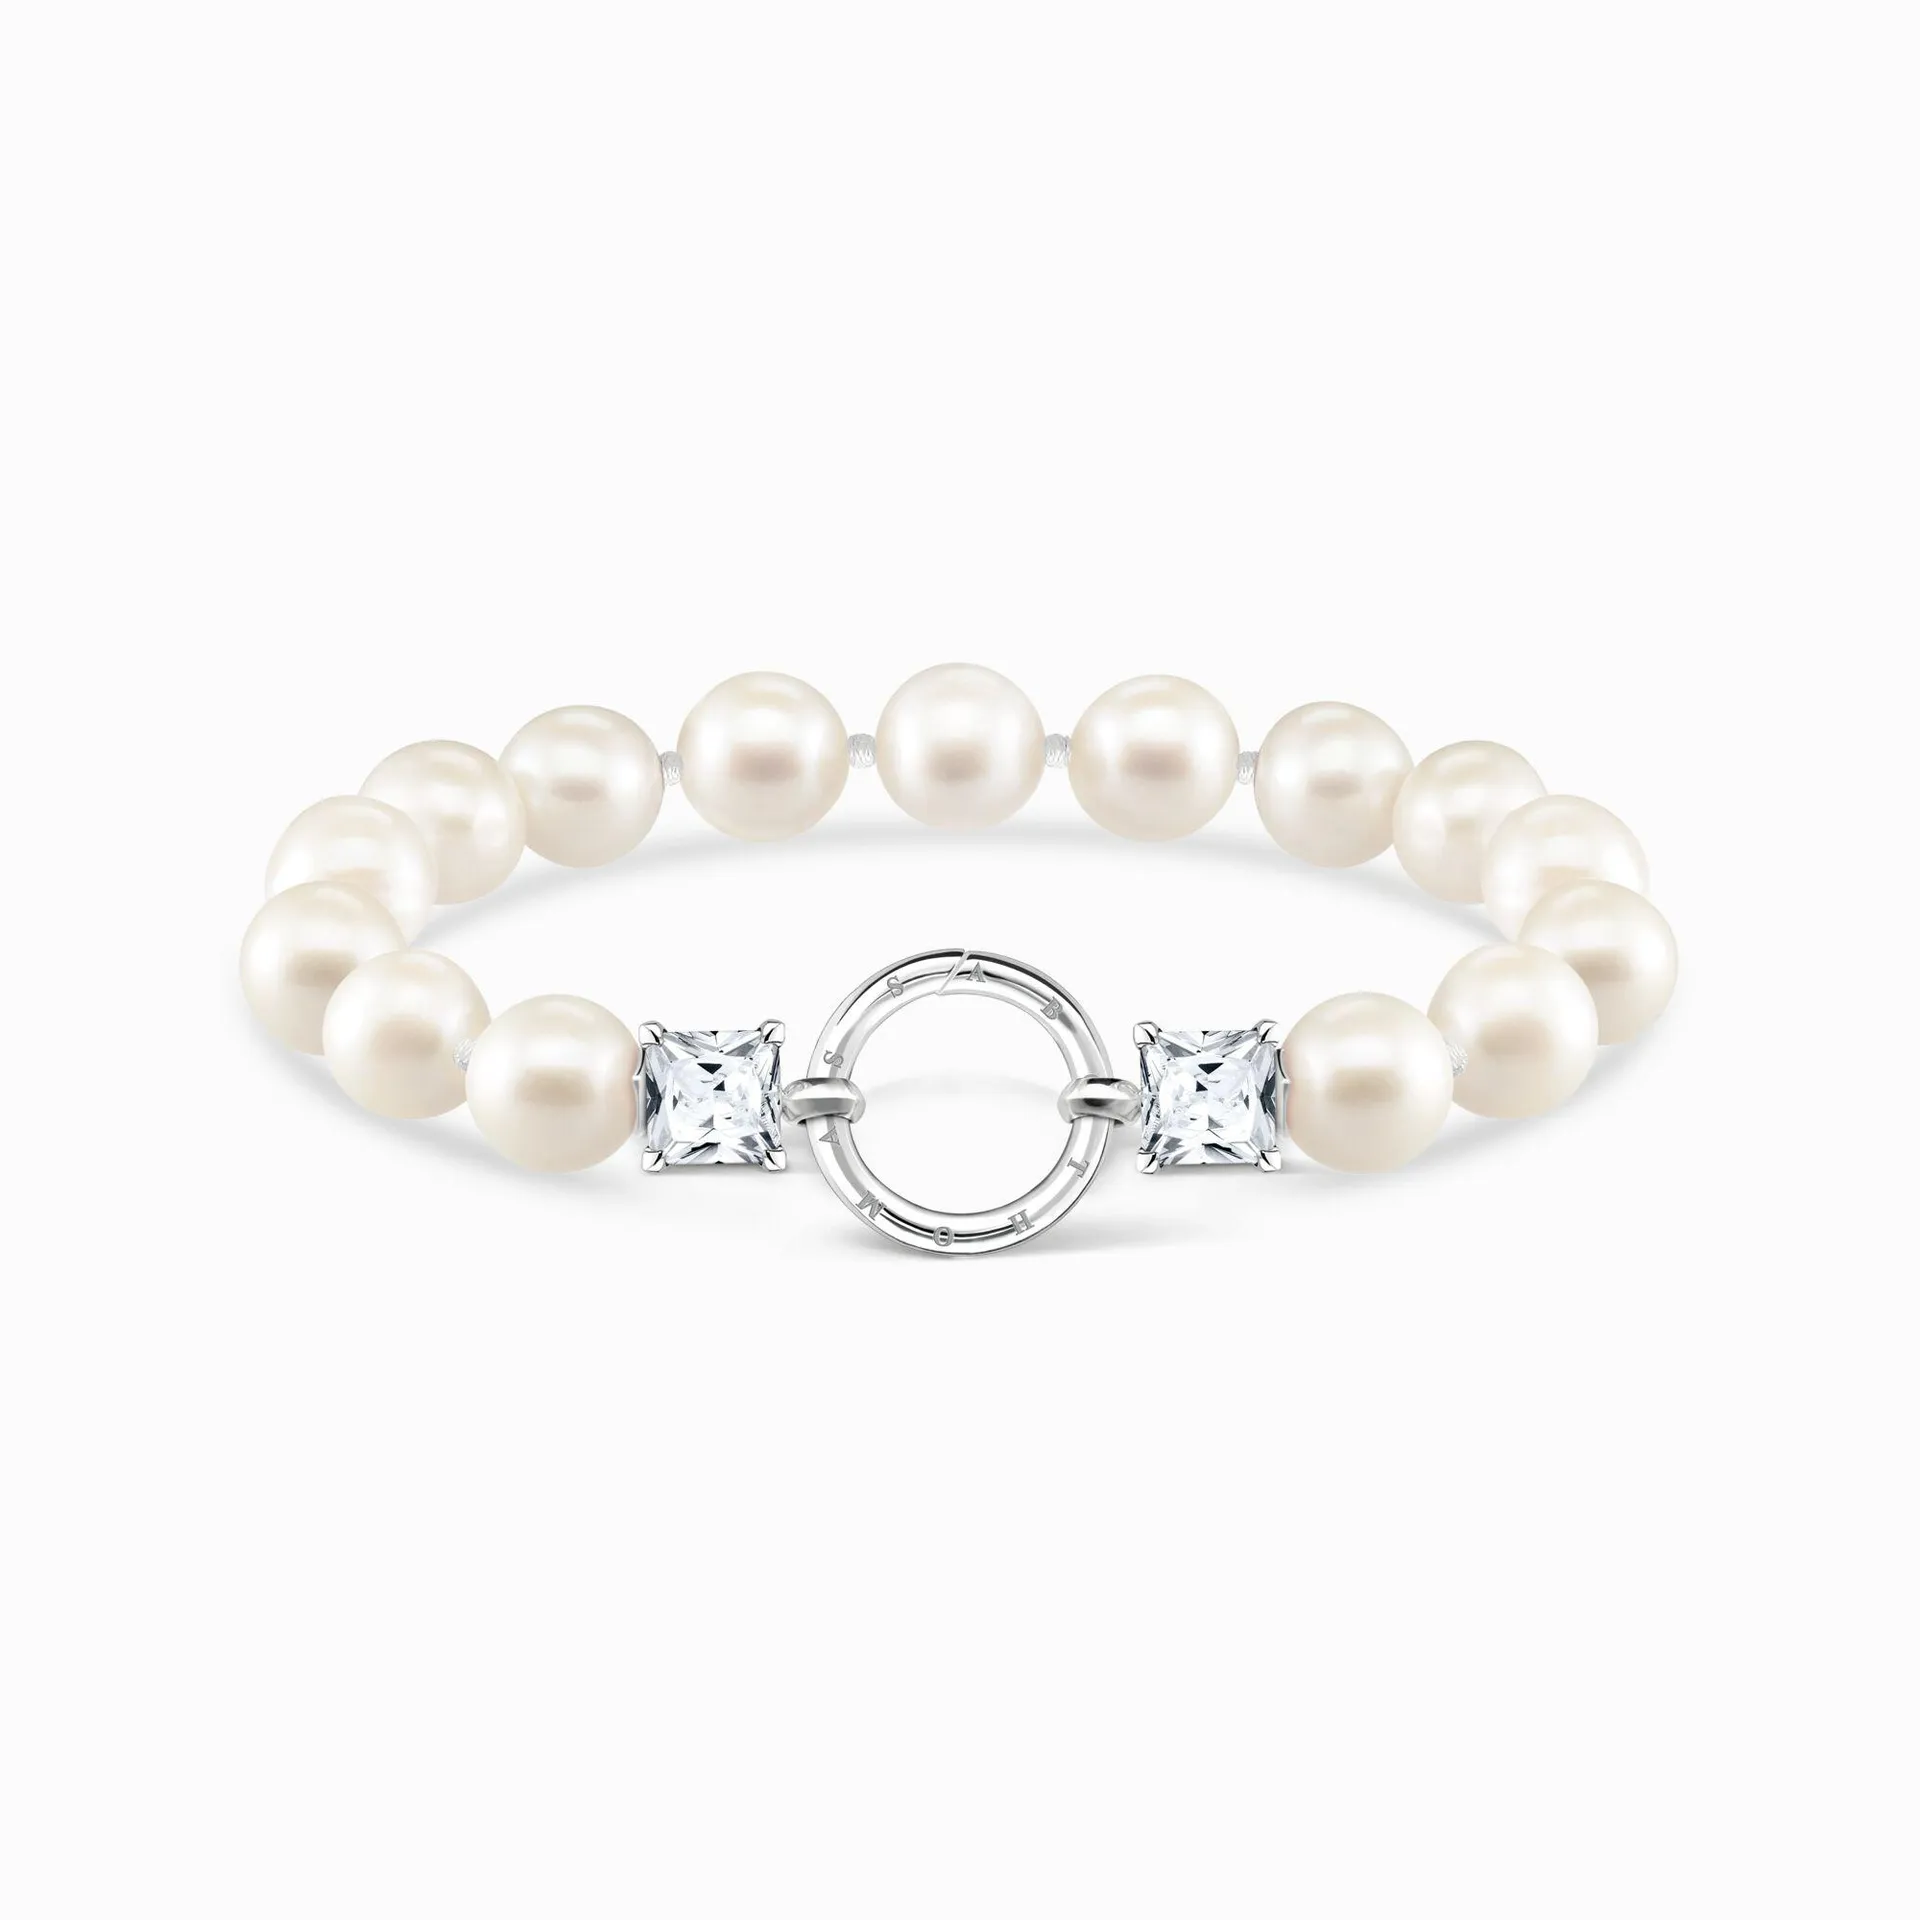 Bracelet pearls silver